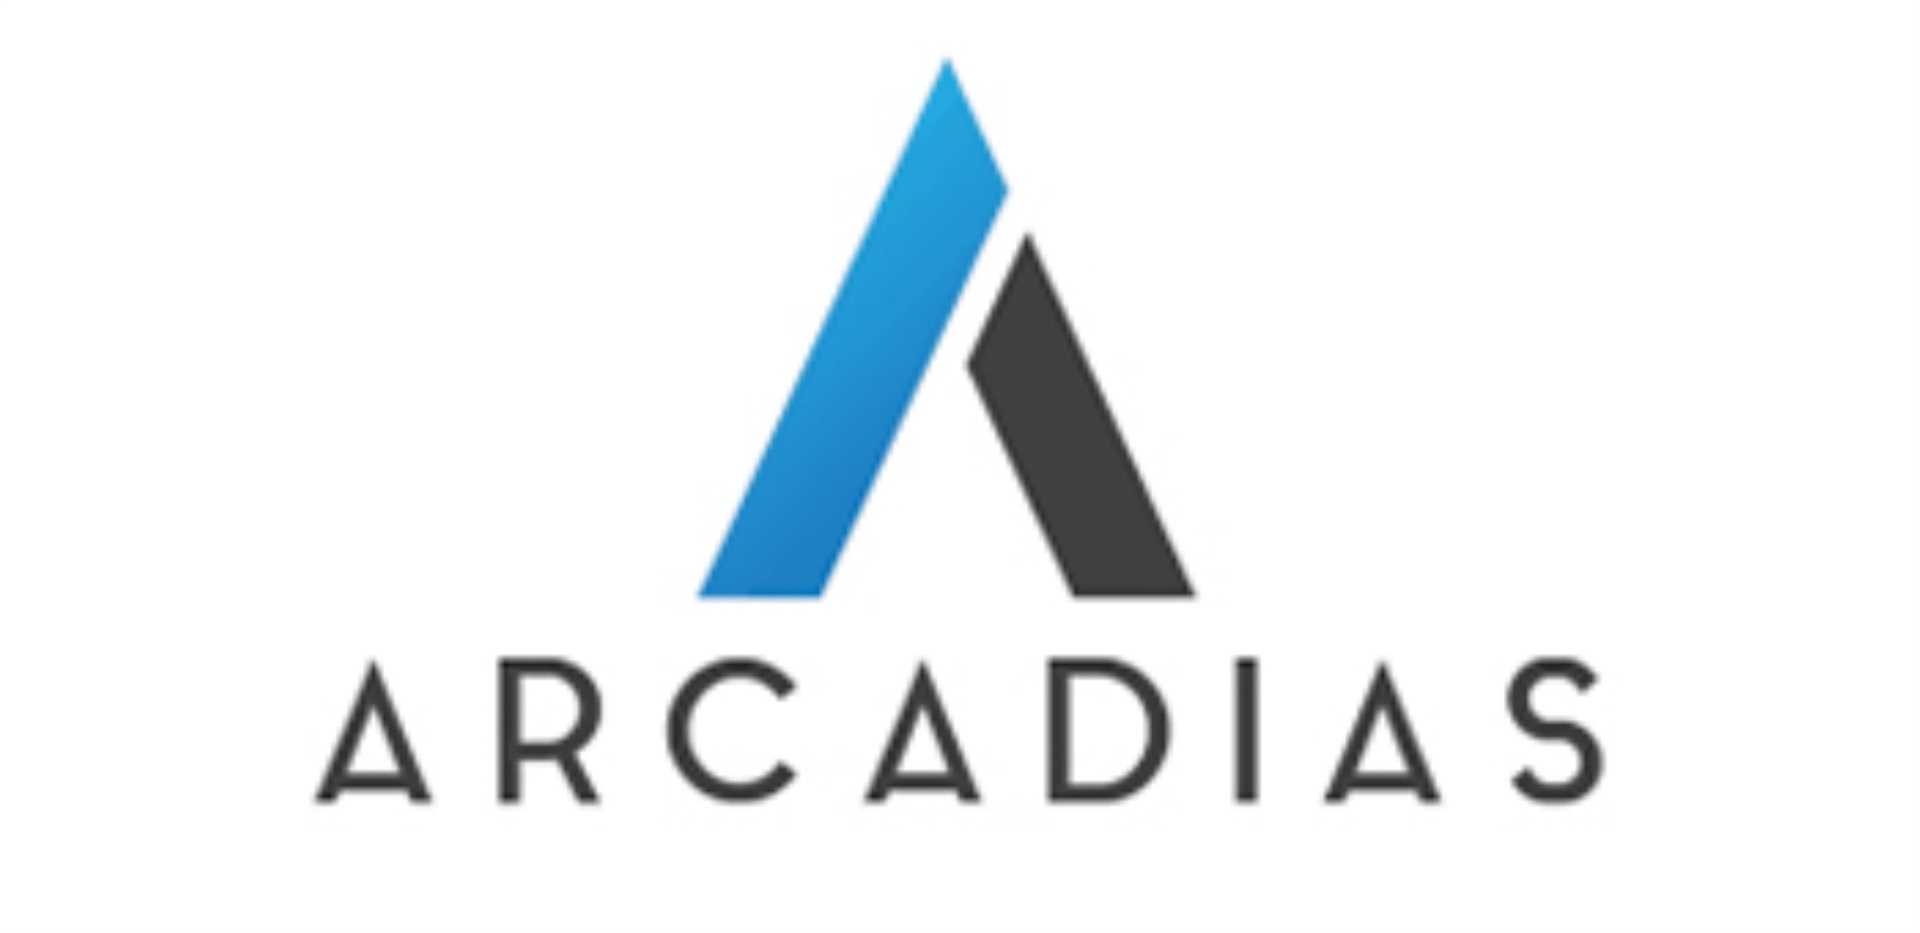 Arcadias